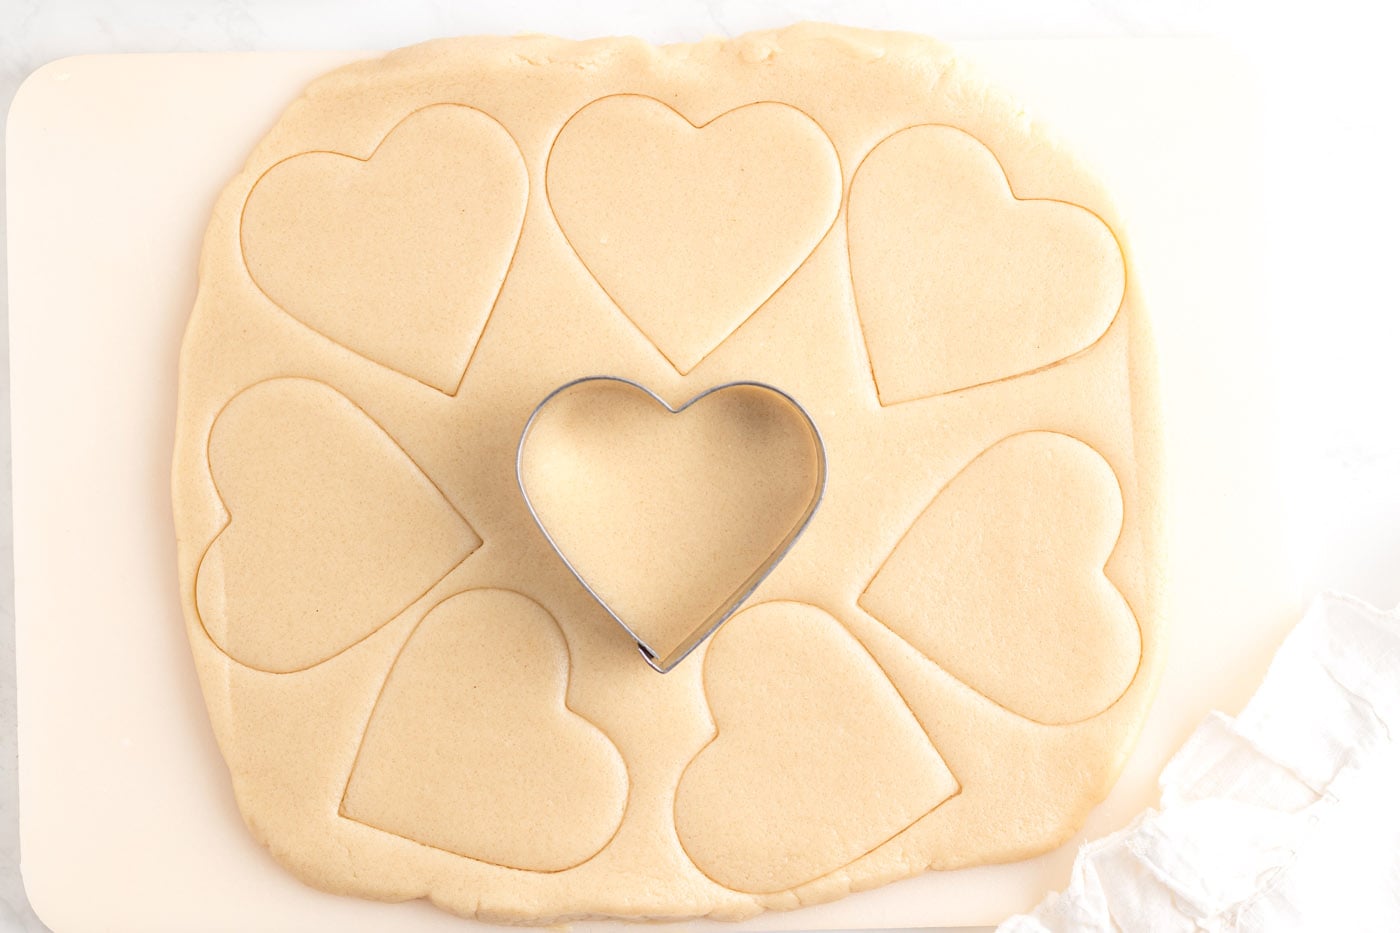 heart shaped cookie cutter cutting sugar cookie dough